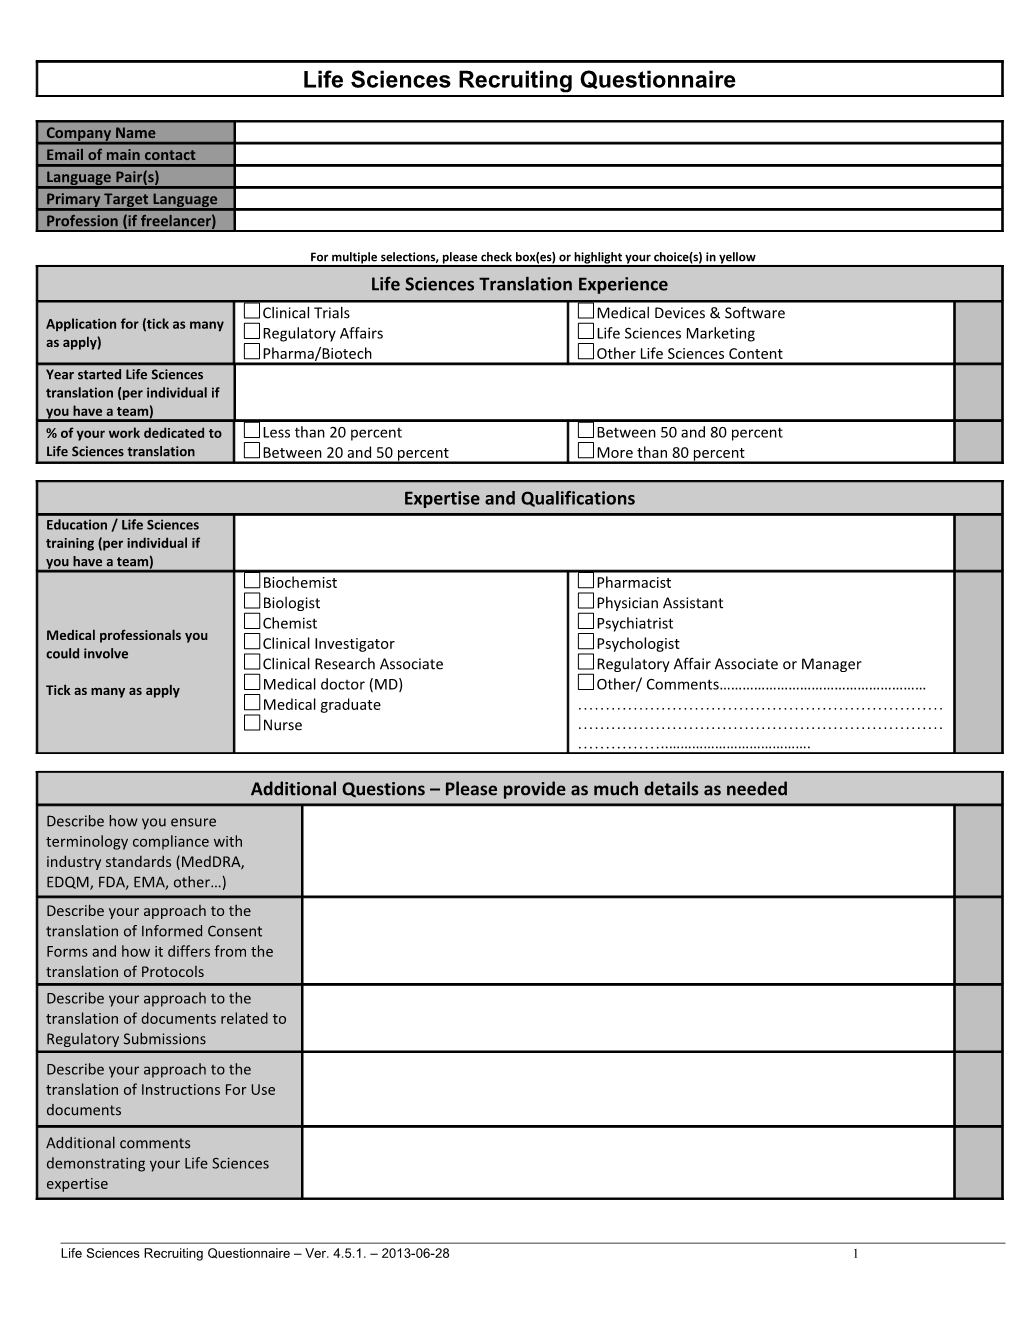 Life Sciences Recruitment Questionnaire